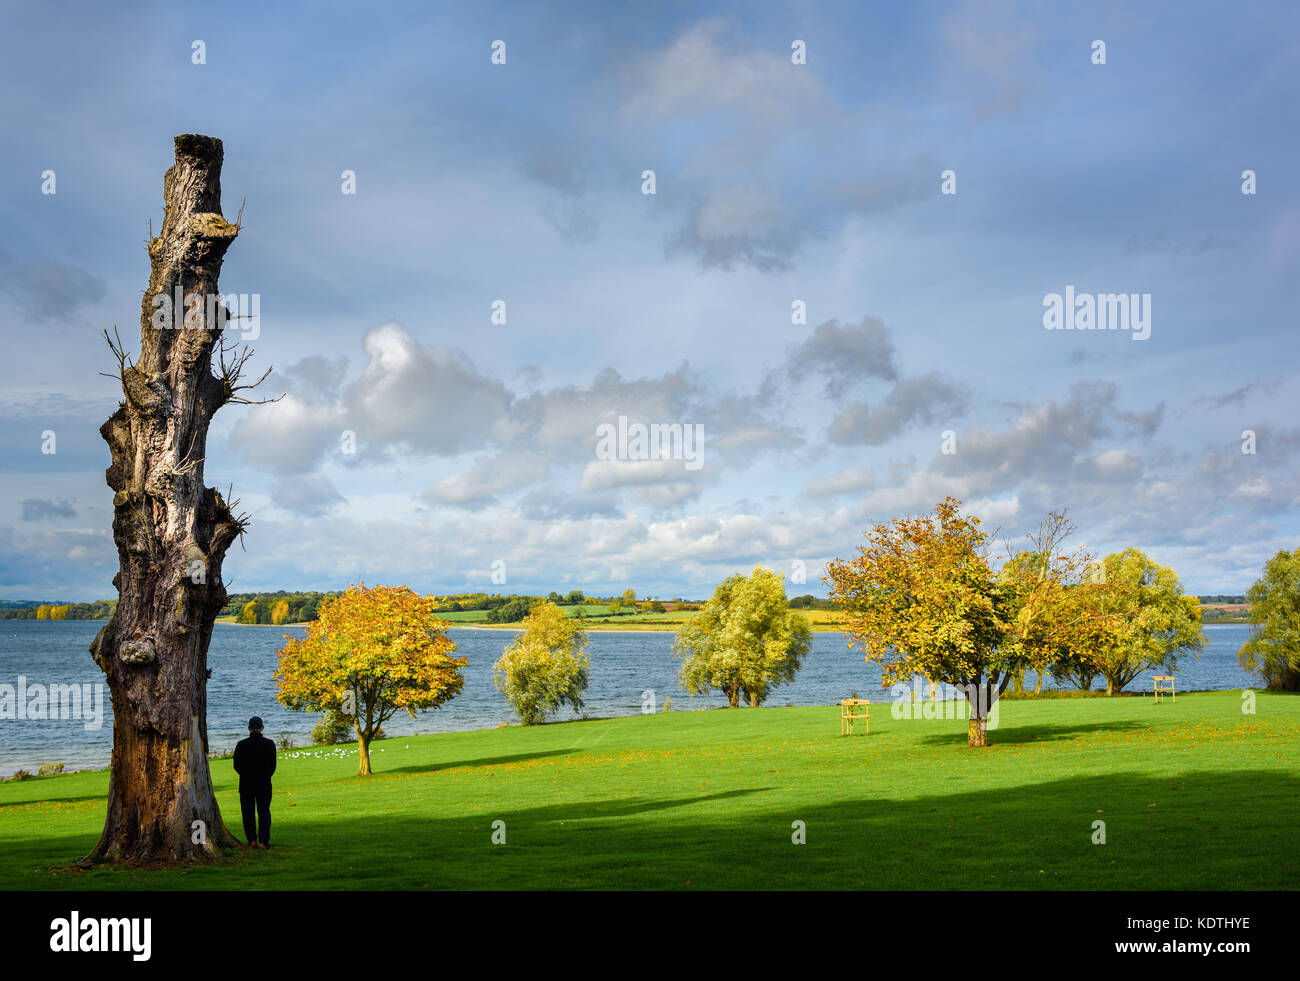 L'homme se tient en outre un lopped, arbre mort sur une journée ensoleillée d'automne près de la rive du lac. Banque D'Images